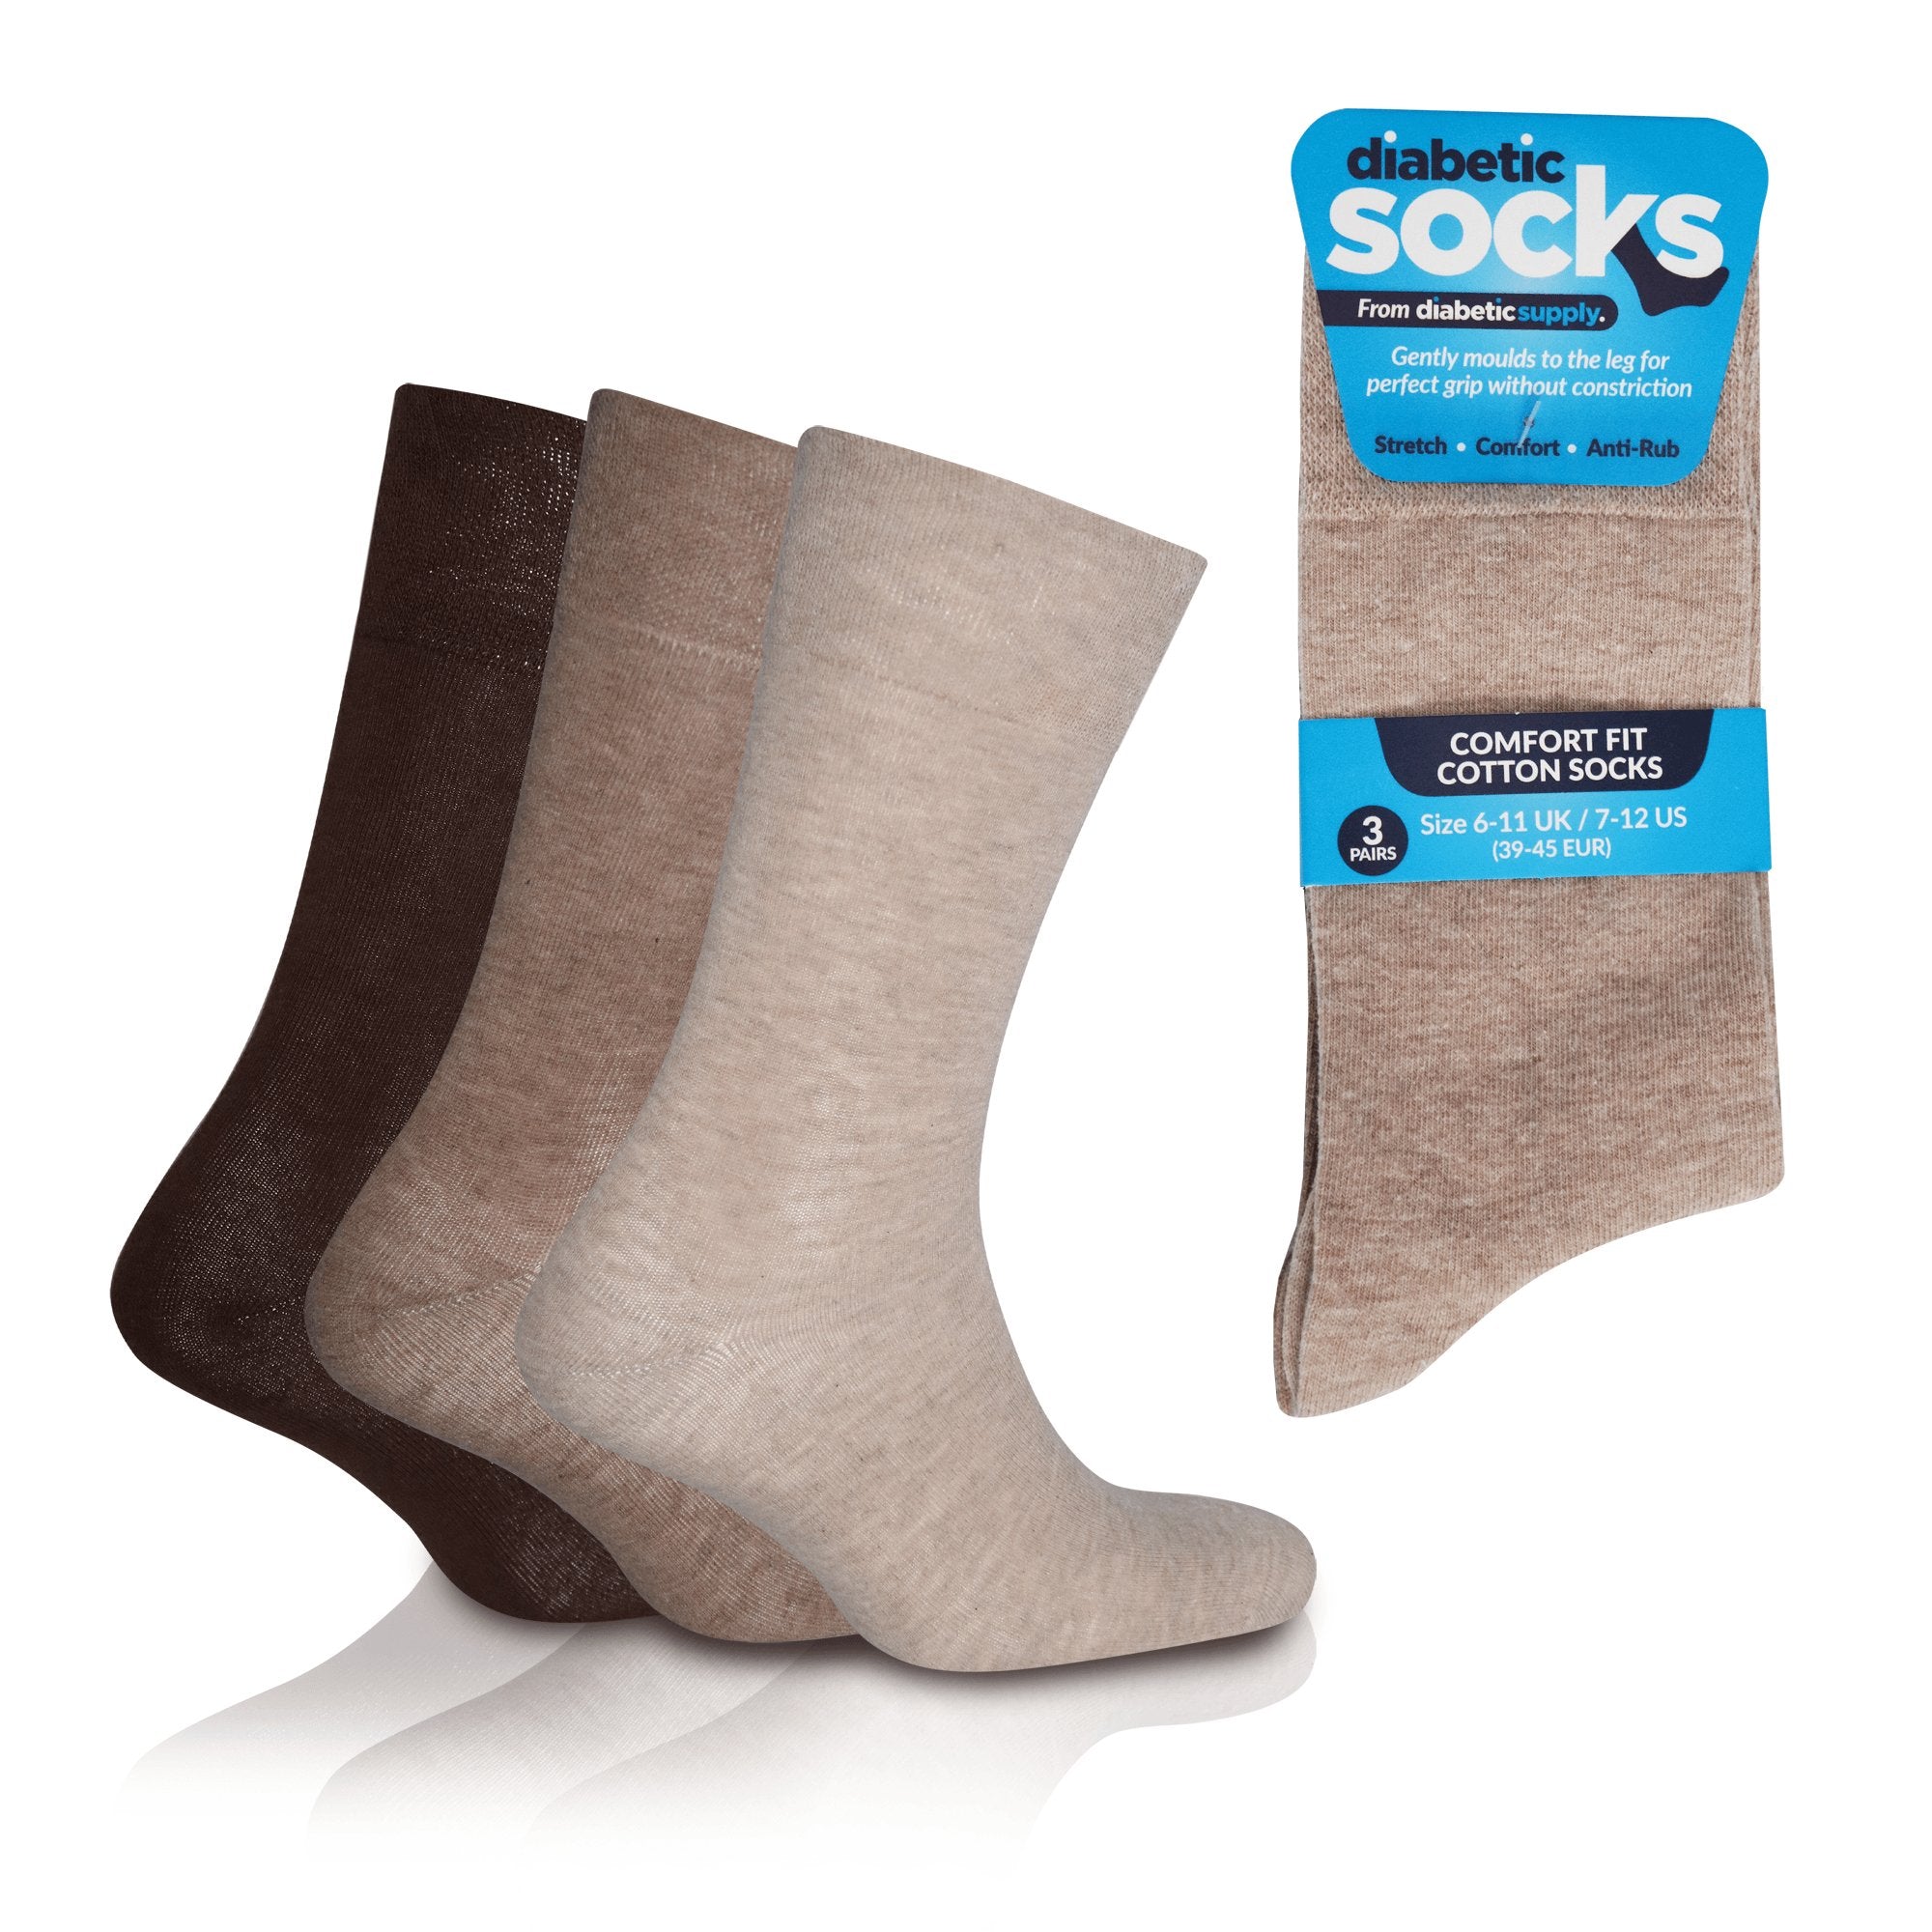 Sock Shop Gentle Grip Diabetic Non Elastic Socks Ladies 3 Pairs